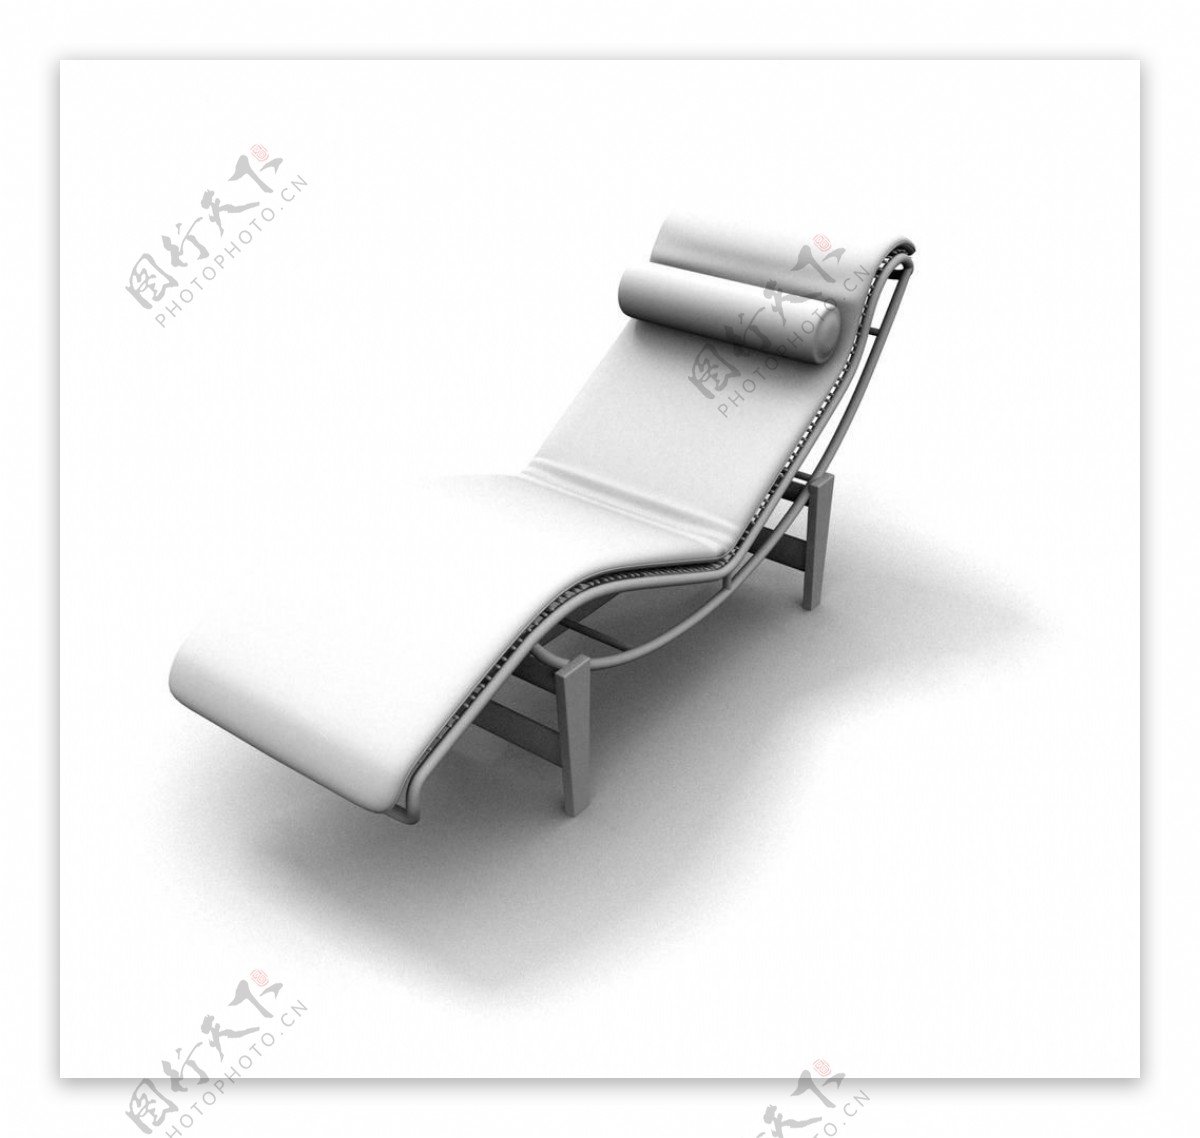 椅子模型椅子图片